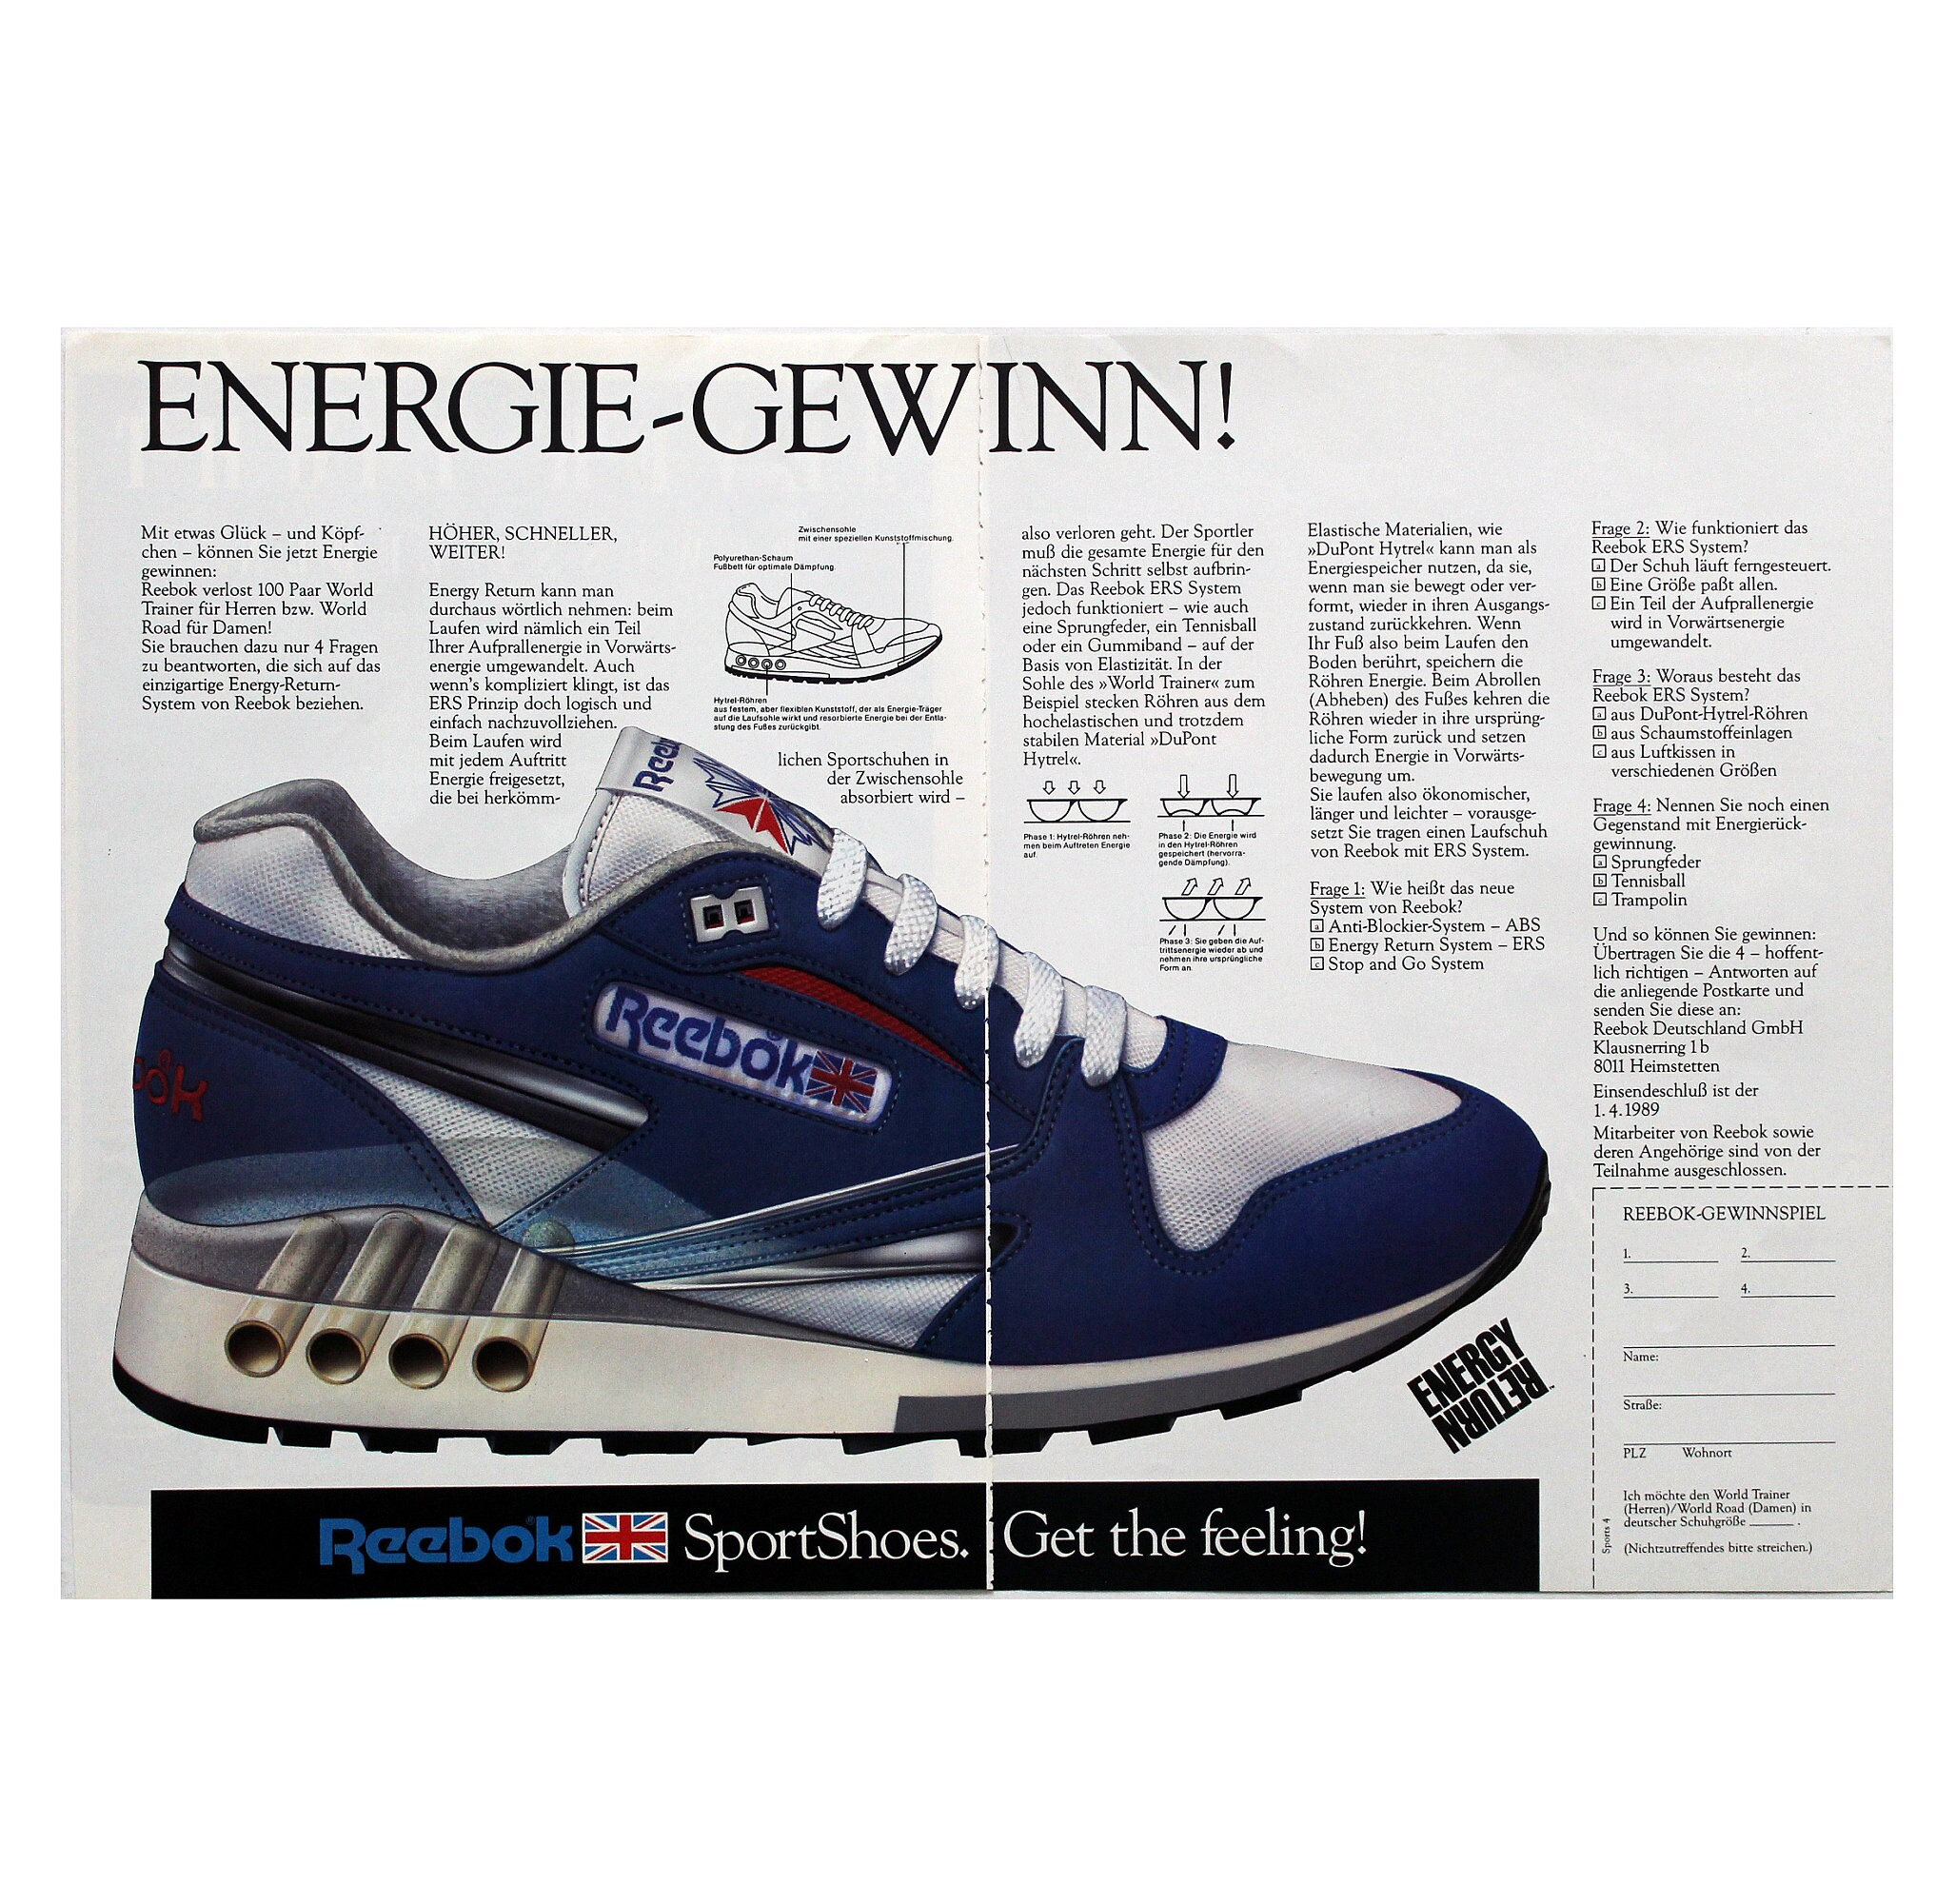 1989 Reebok ERS zapatillas de deporte anuncio impreso - Etsy España